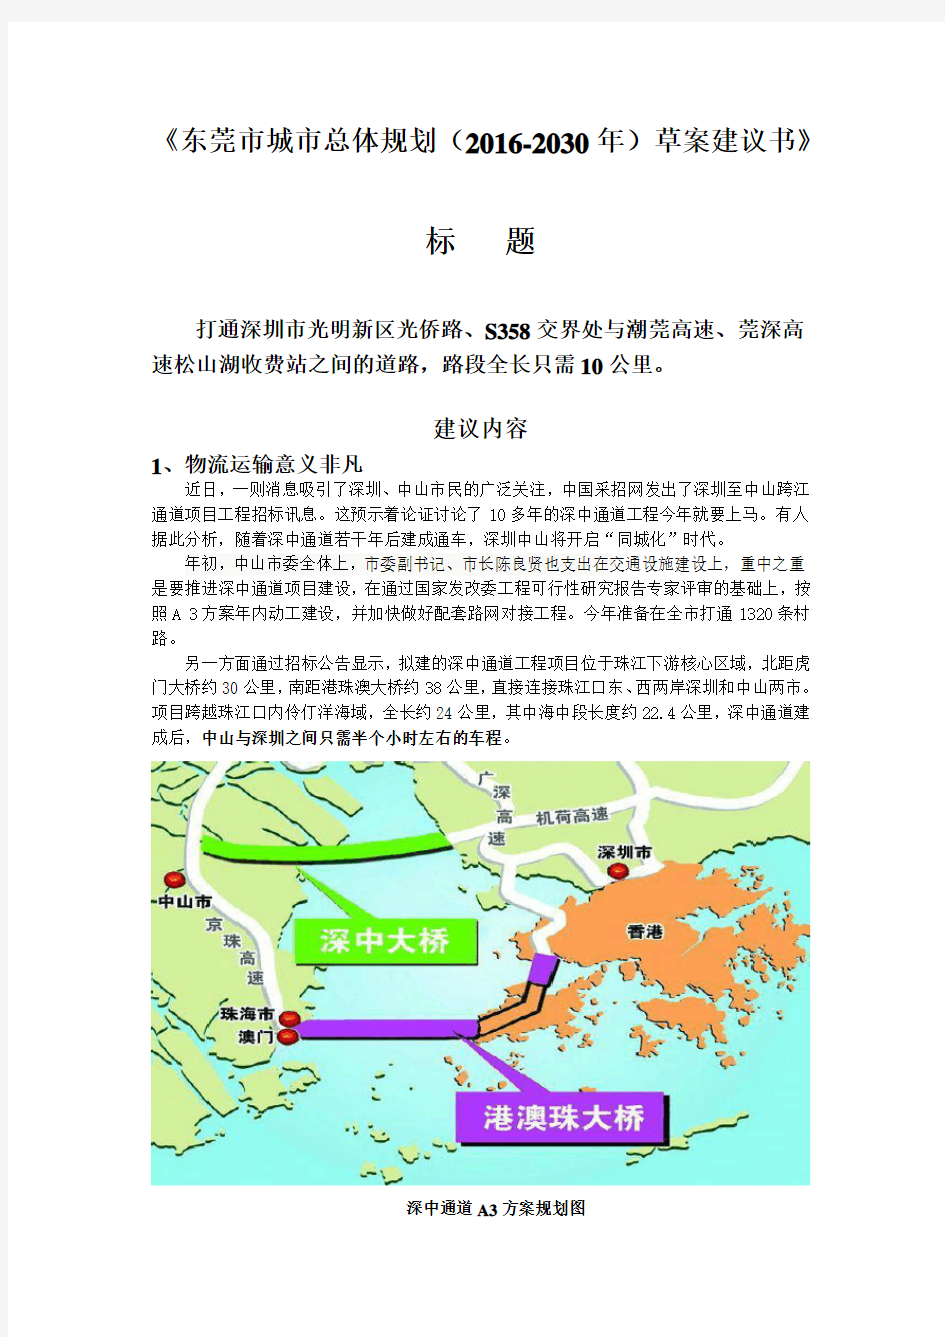 (完整版)东莞市城市总体规划(2016-2030年)草案建议书